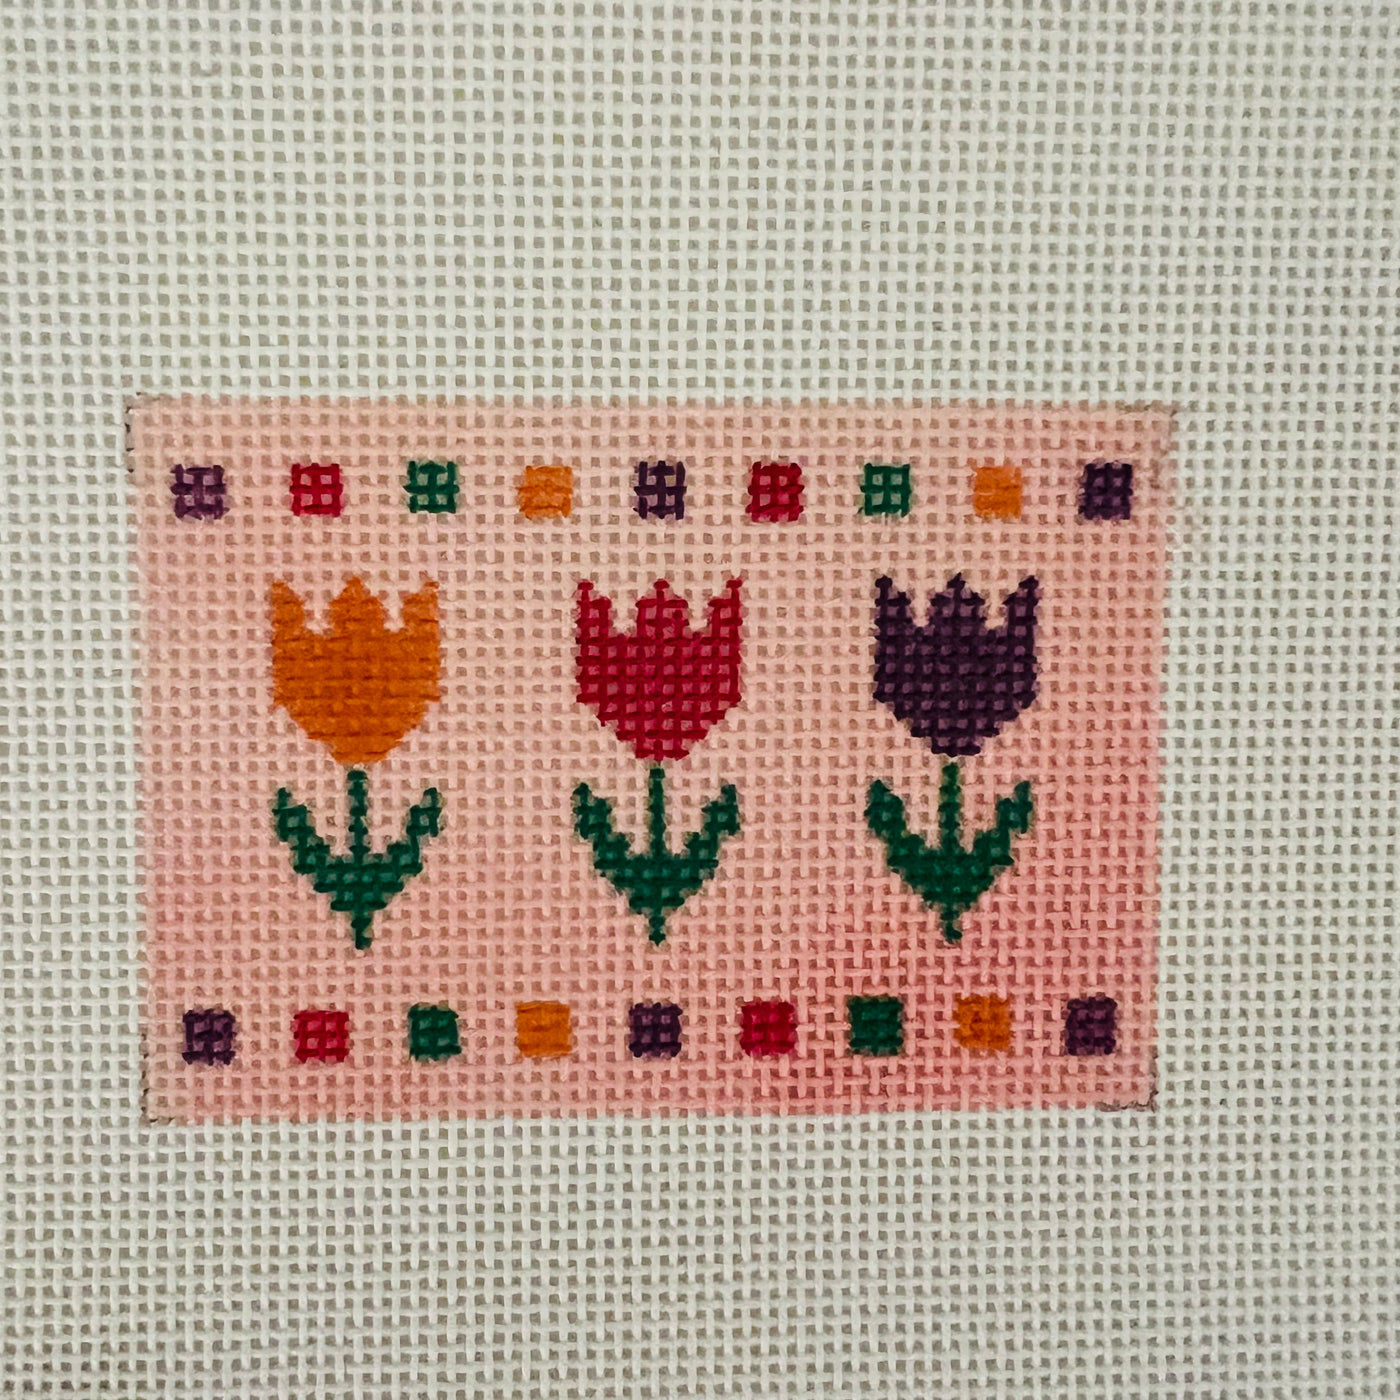 Tulips Insert Needlepoint Canvas